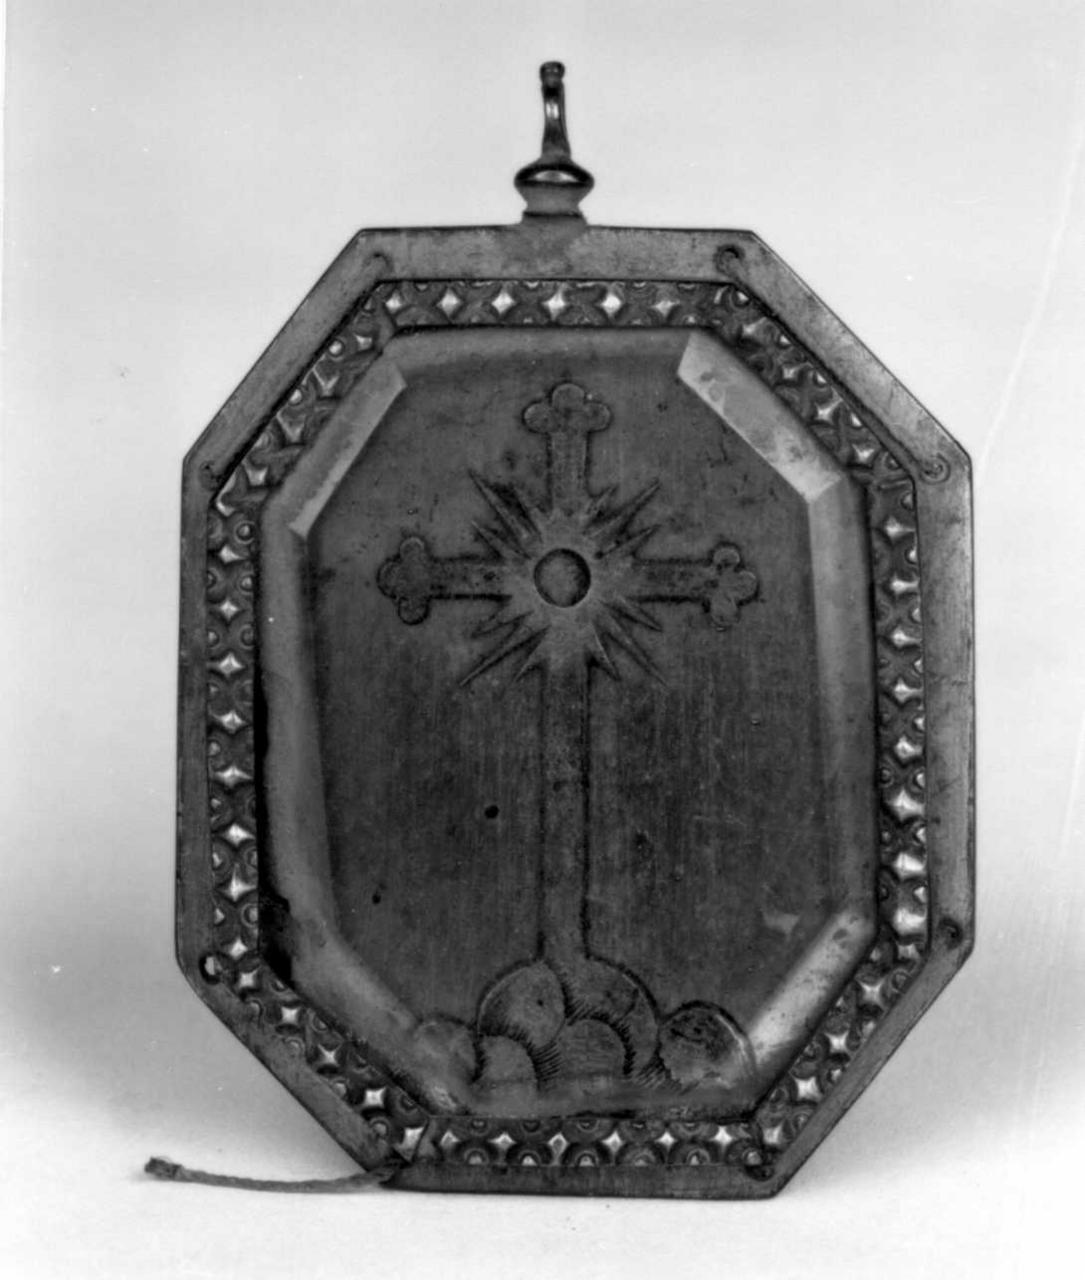 reliquiario a capsula - a medaglione - bottega emiliana (fine/inizio secc. XVII/ XVIII)